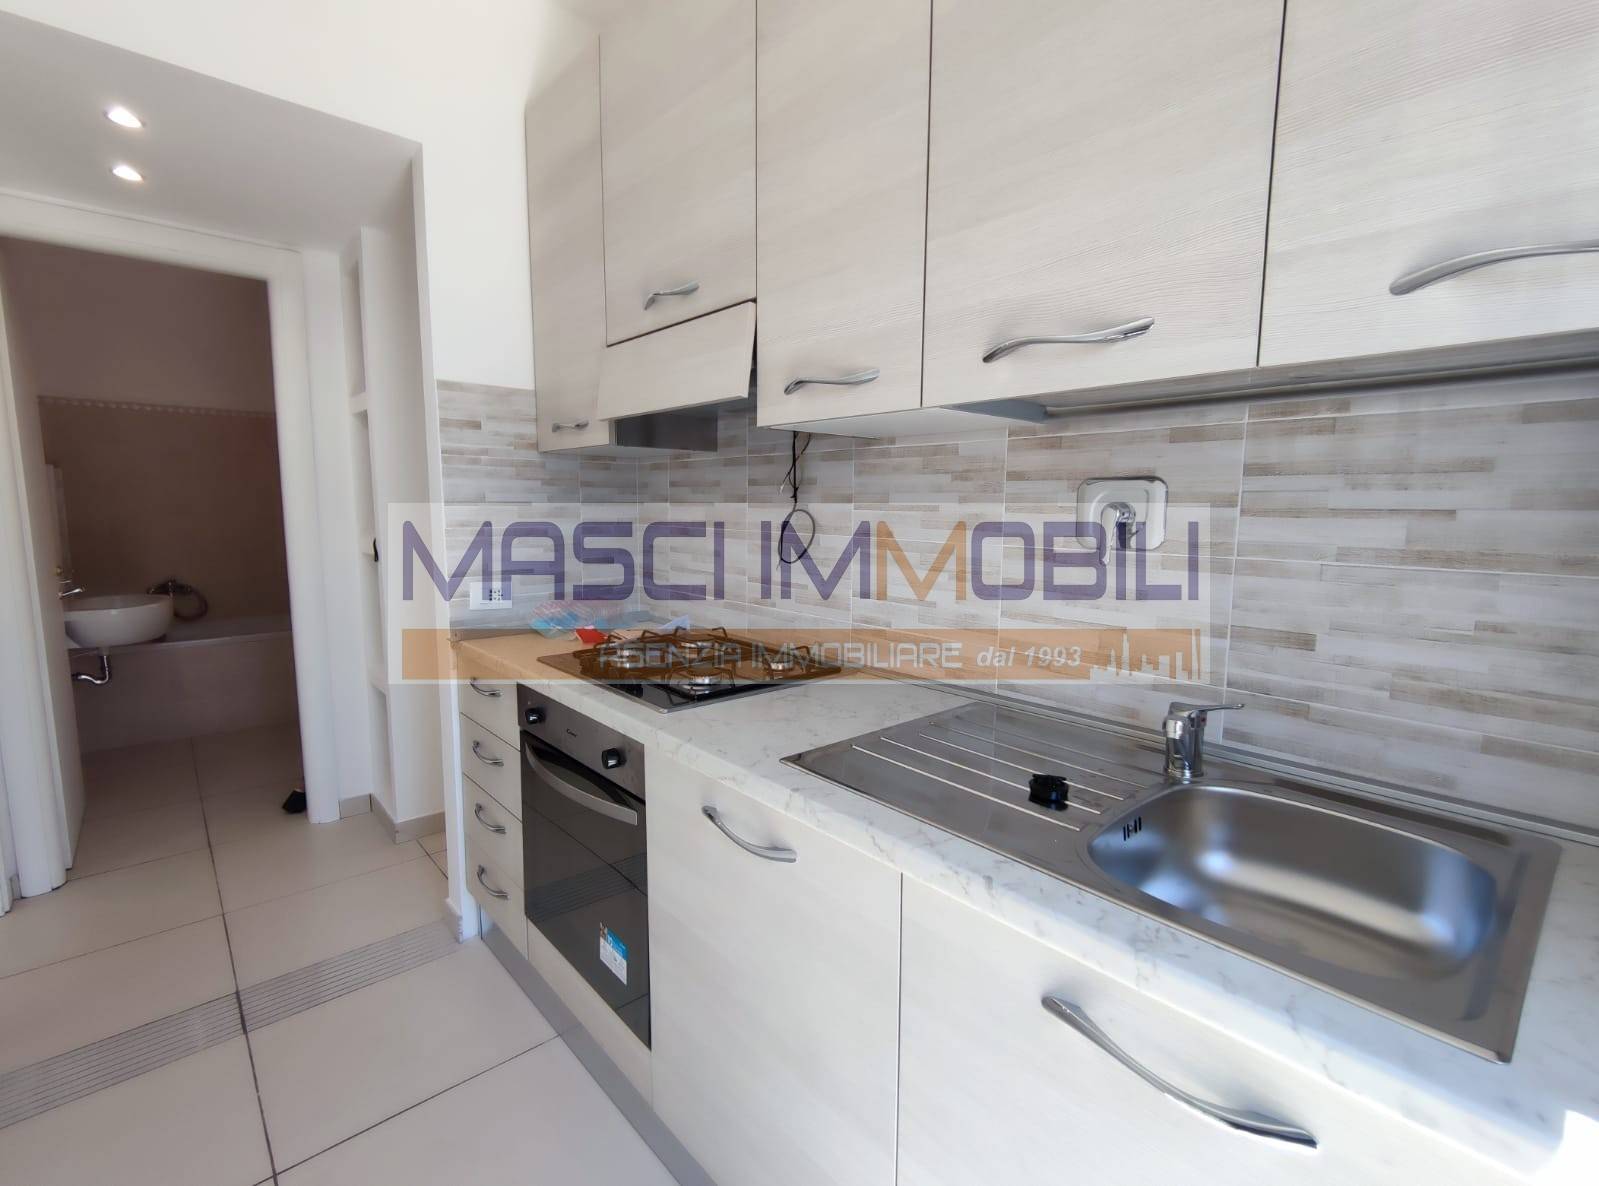 Appartamento in affitto a Fiano Romano, 2 locali, prezzo € 550 | CambioCasa.it